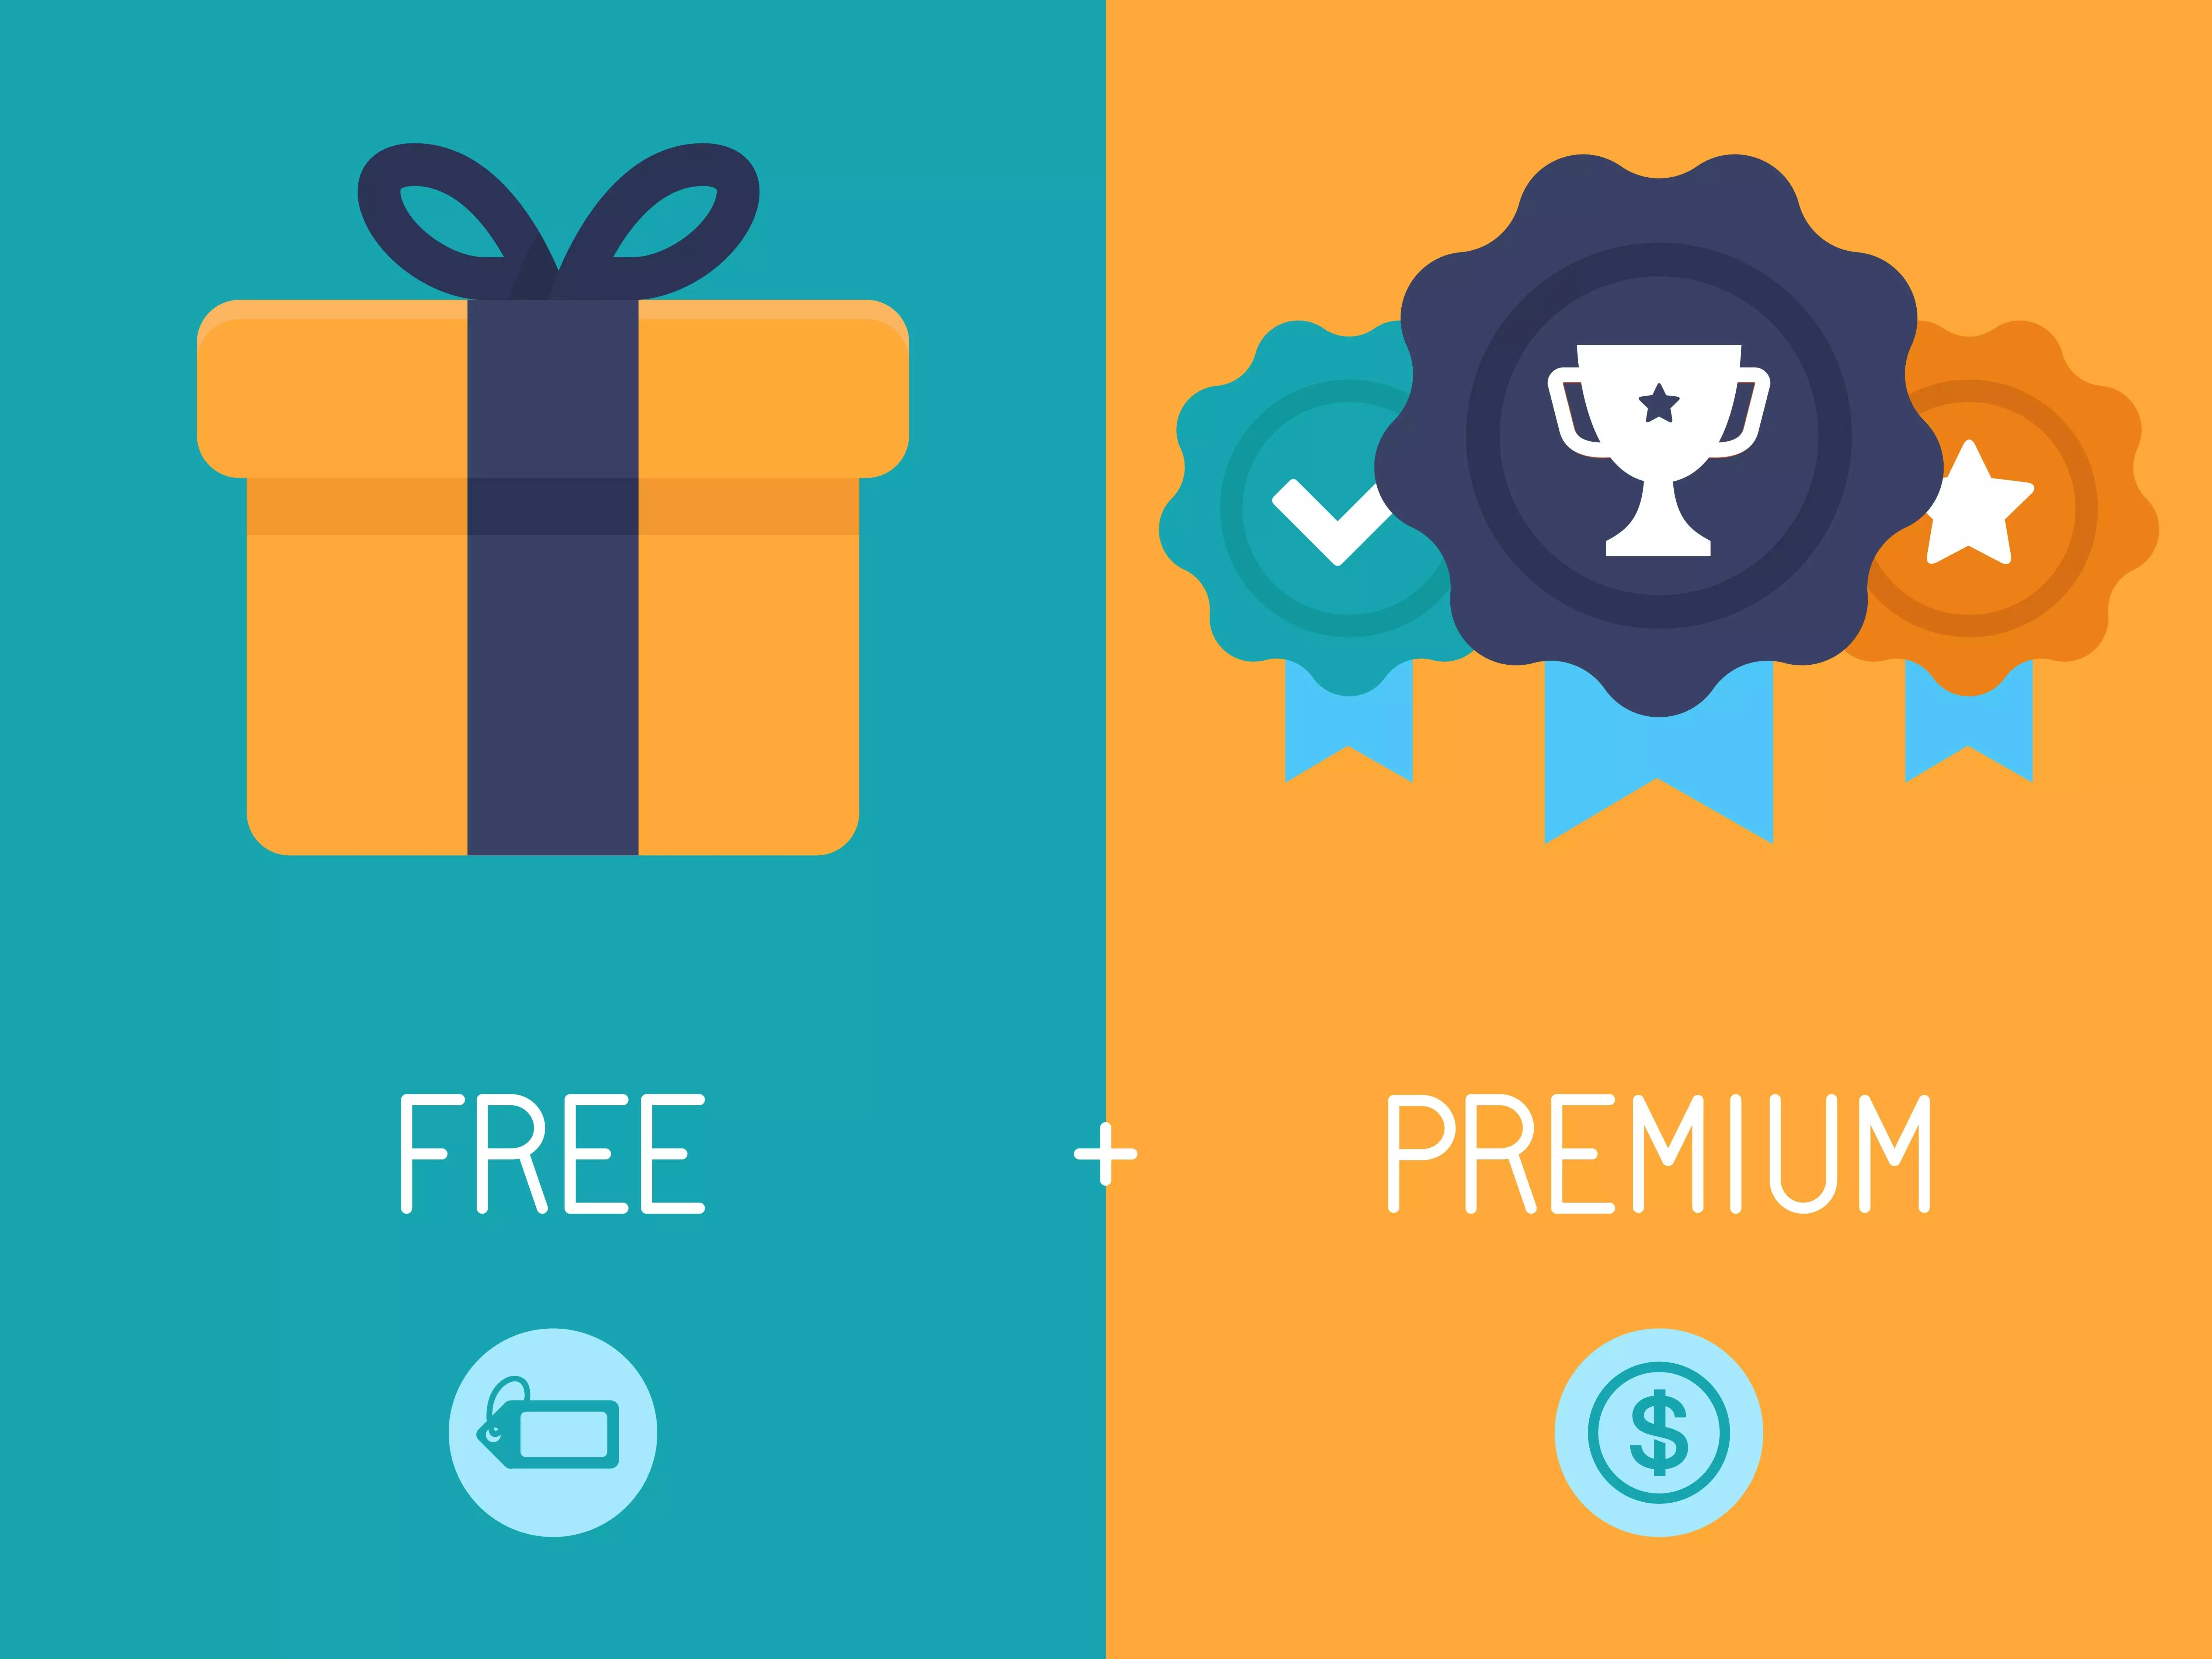 Free vs Premium.